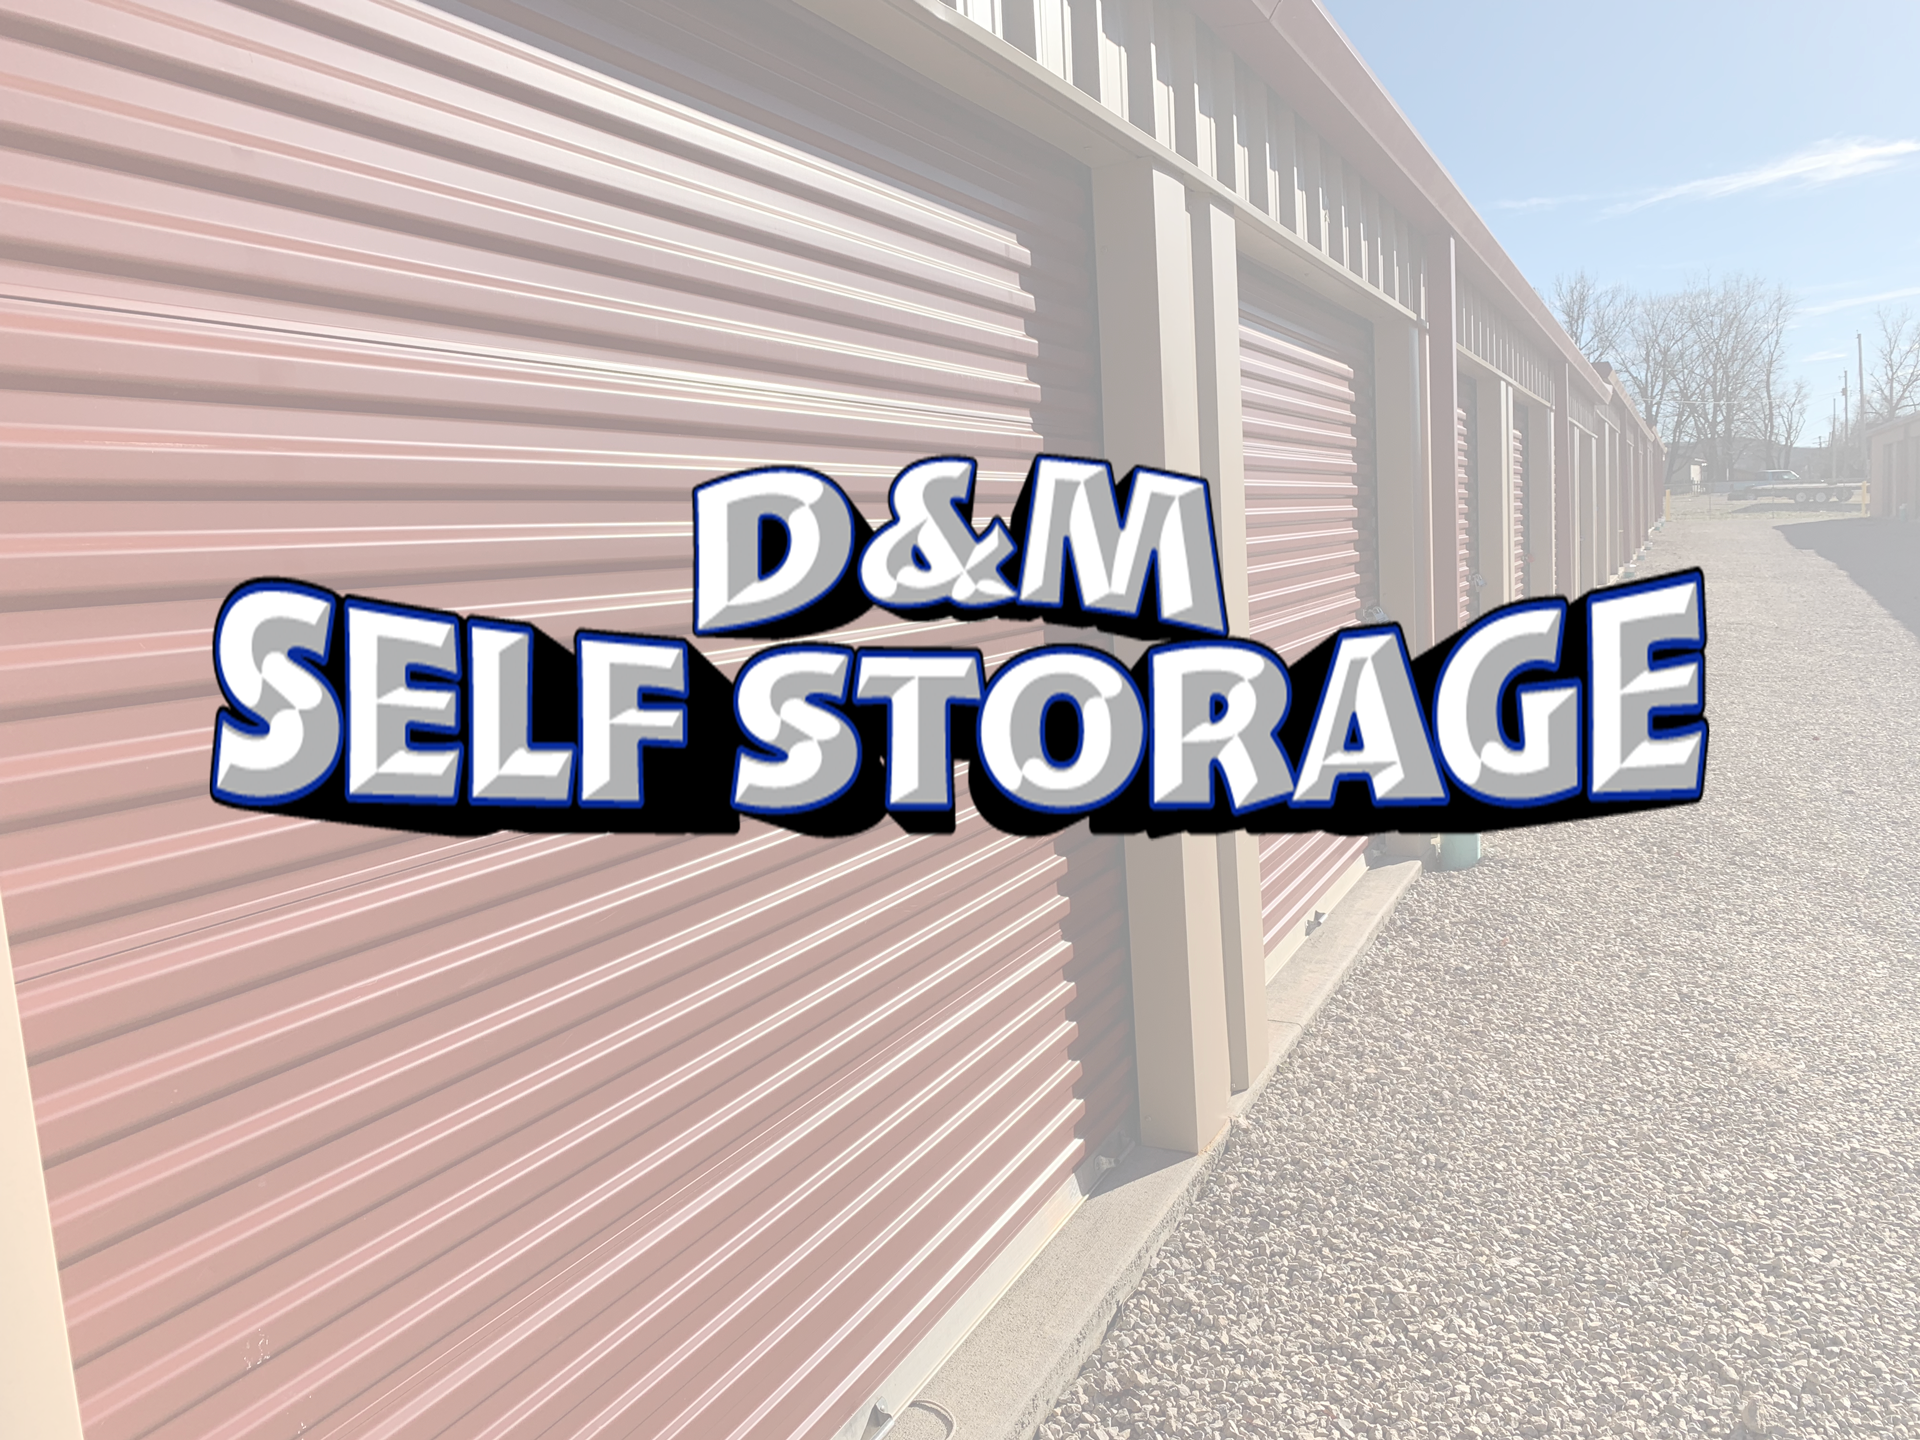 D&M Self Storage Title